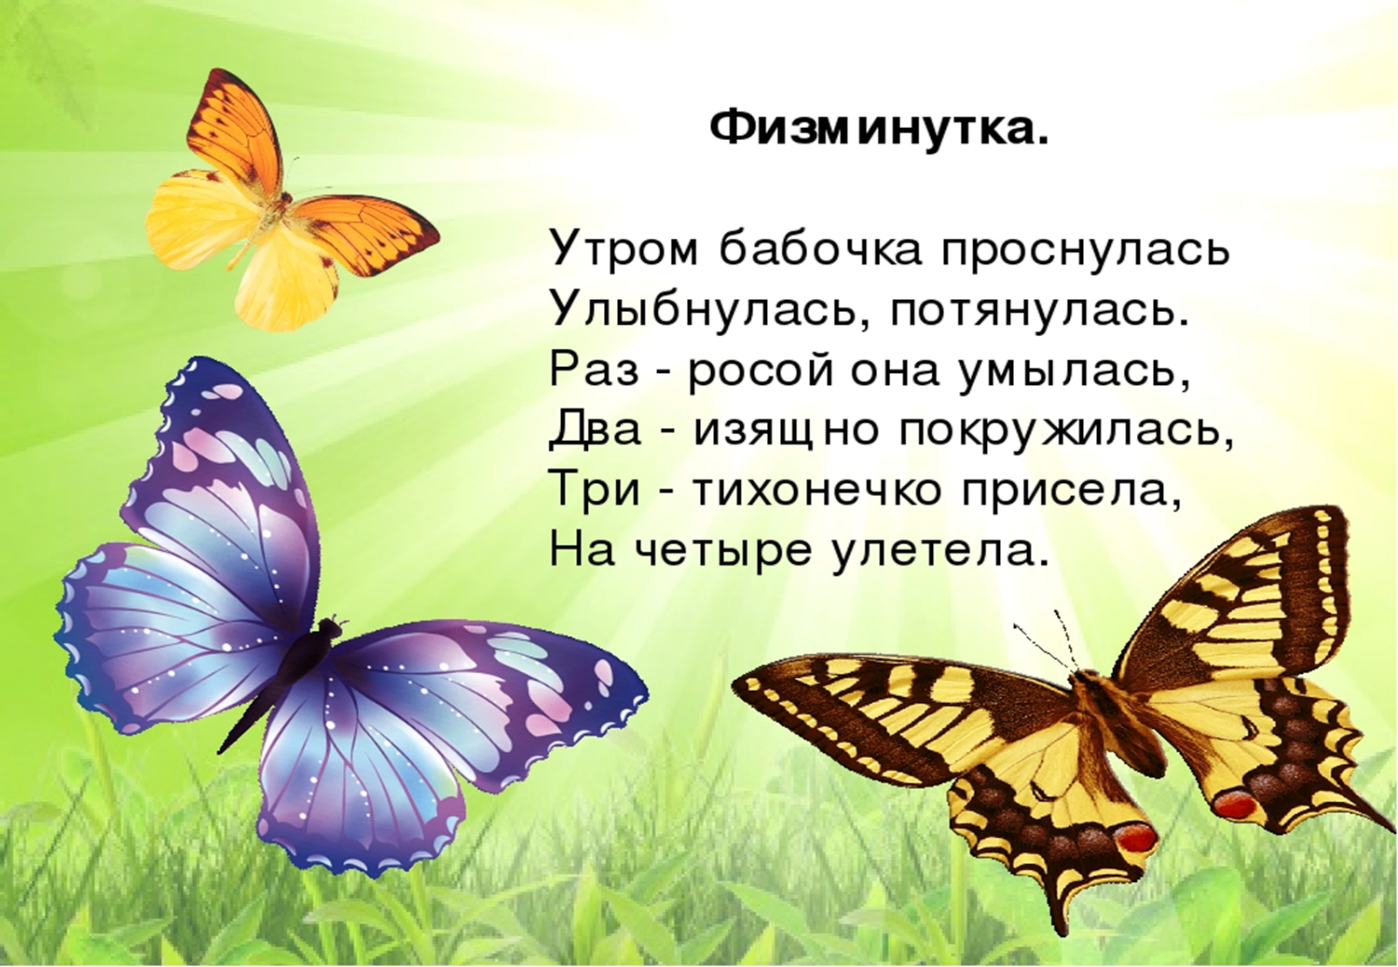 Про лета бабочка. Стих про бабочку. Стихотворение про бабочку для детей. Стишки про бабочку для малышей. Стихи для детей про бабочек для детей.